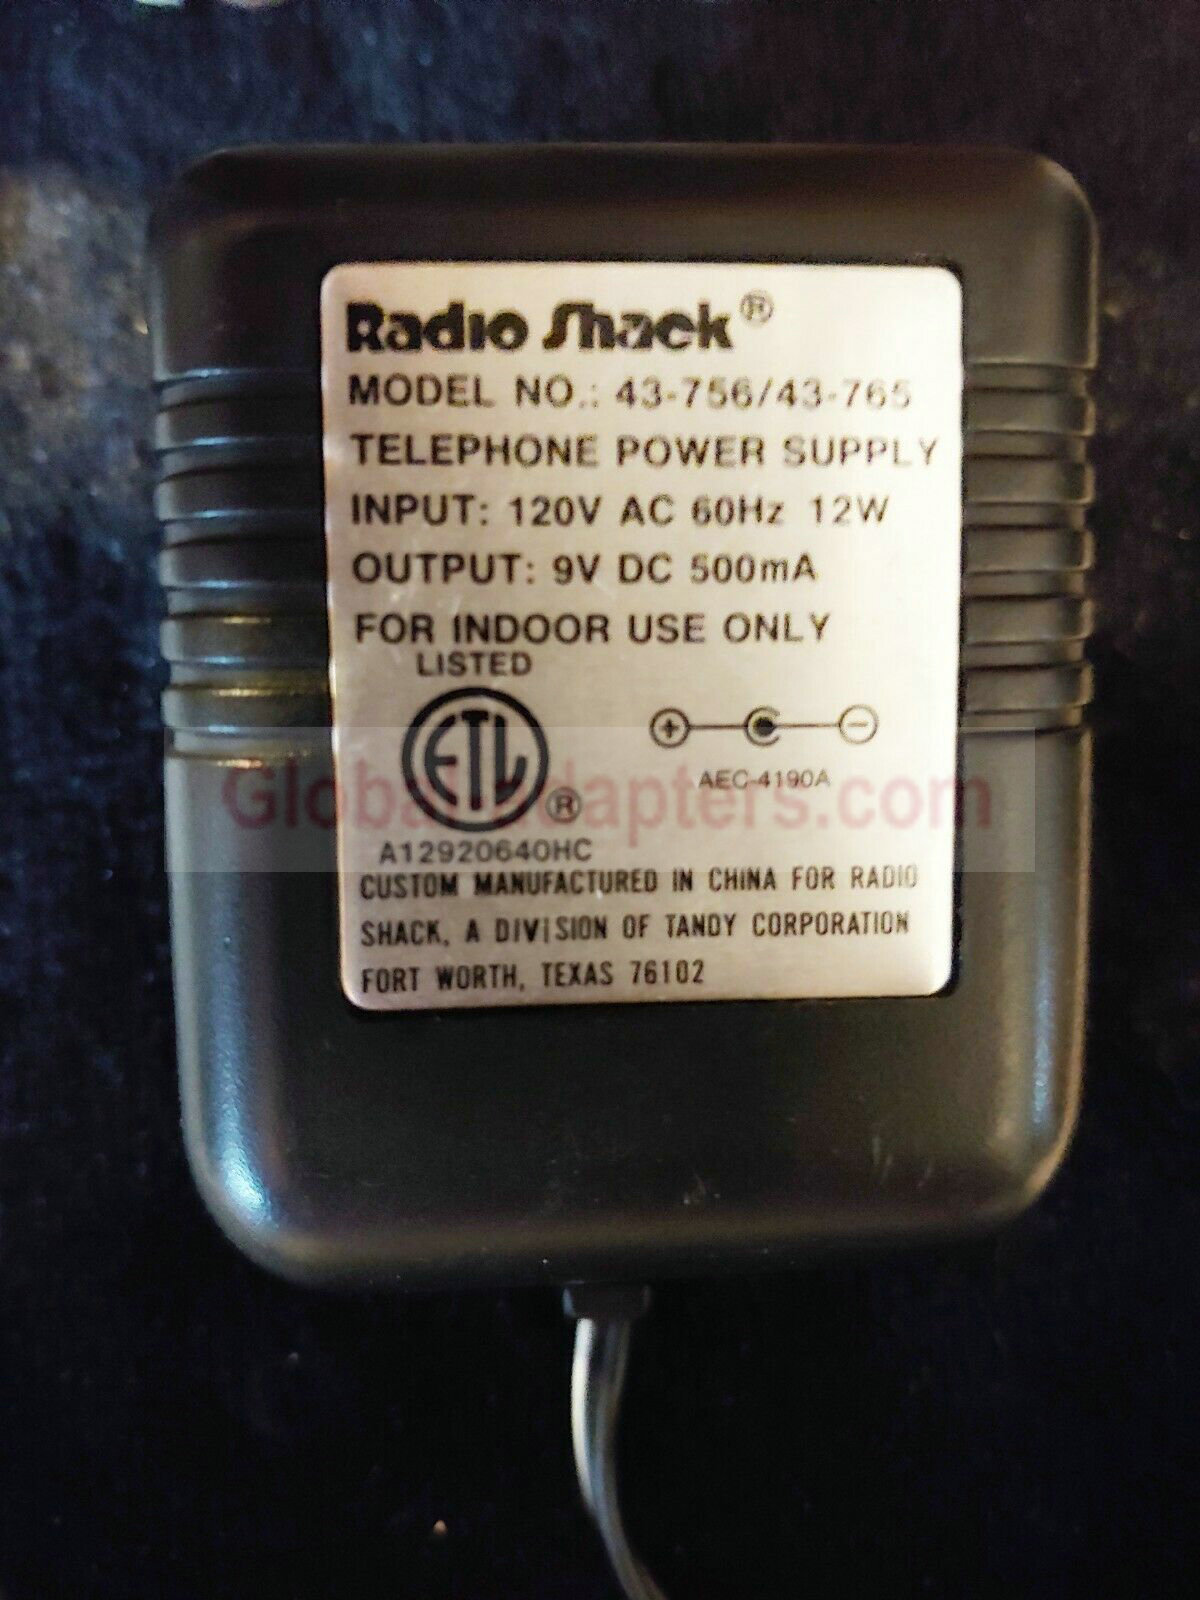 New DC9V 500mA RadioShack 43-756/43-765 Power Supply AC ADAPTER